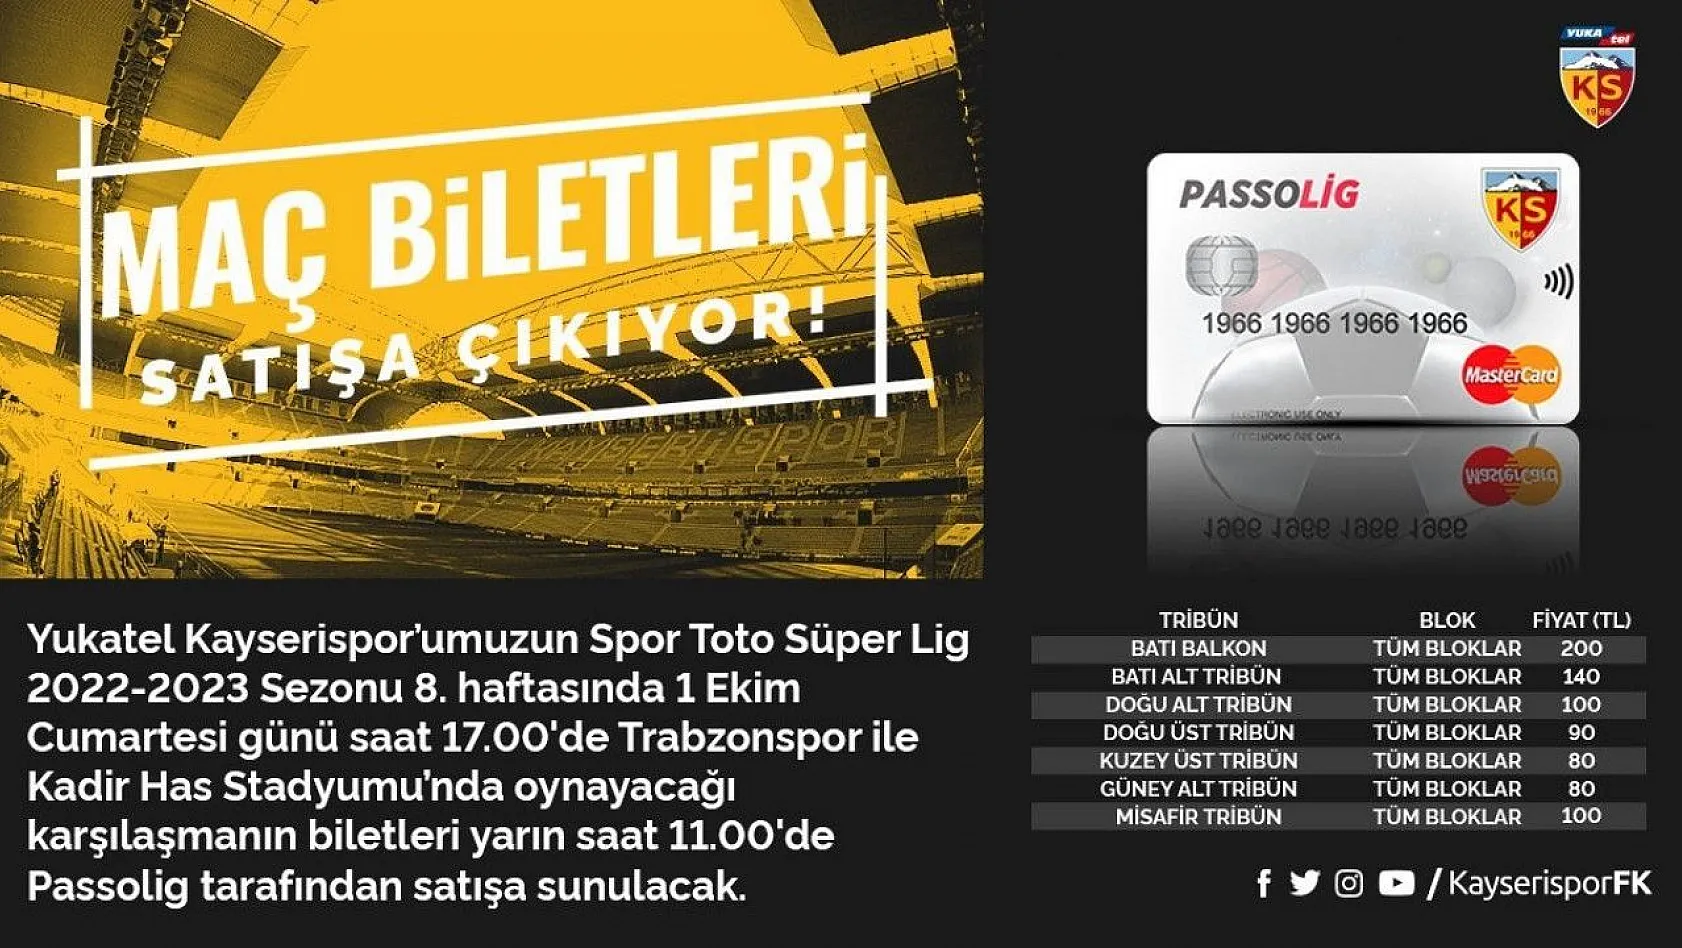 Kayserispor - Trabzonspor maçı bilet fiyatları belli oldu